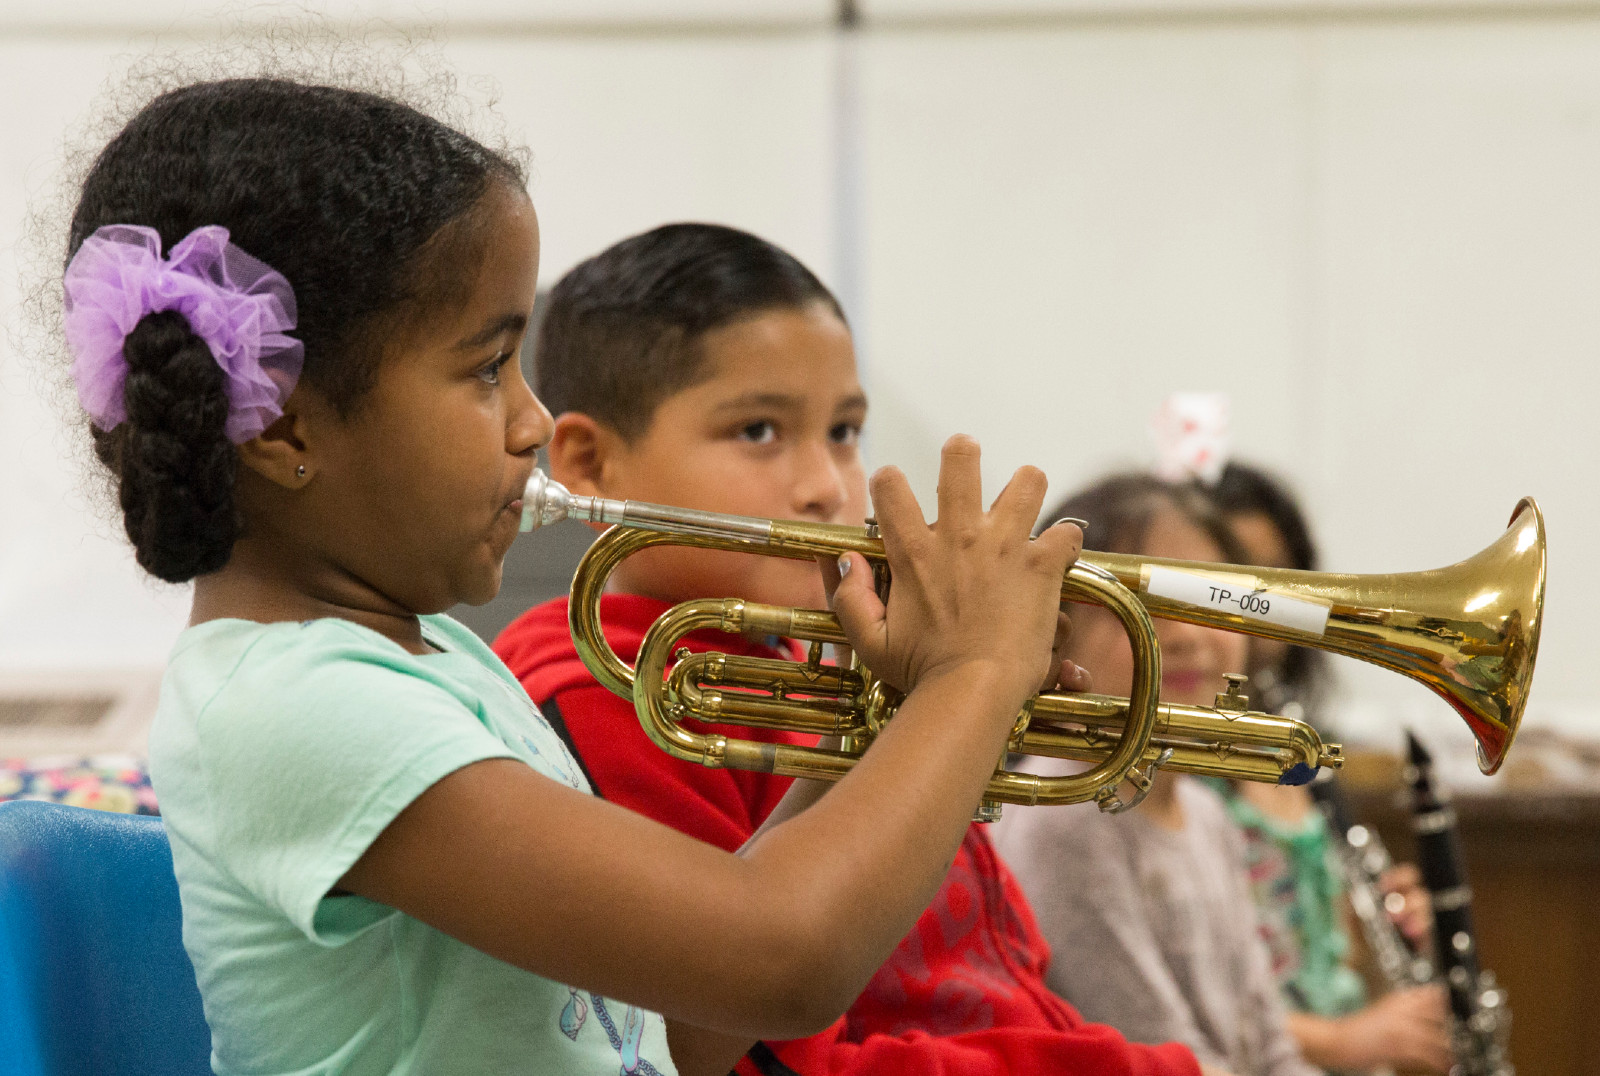 Girls plays trumpet next to other children